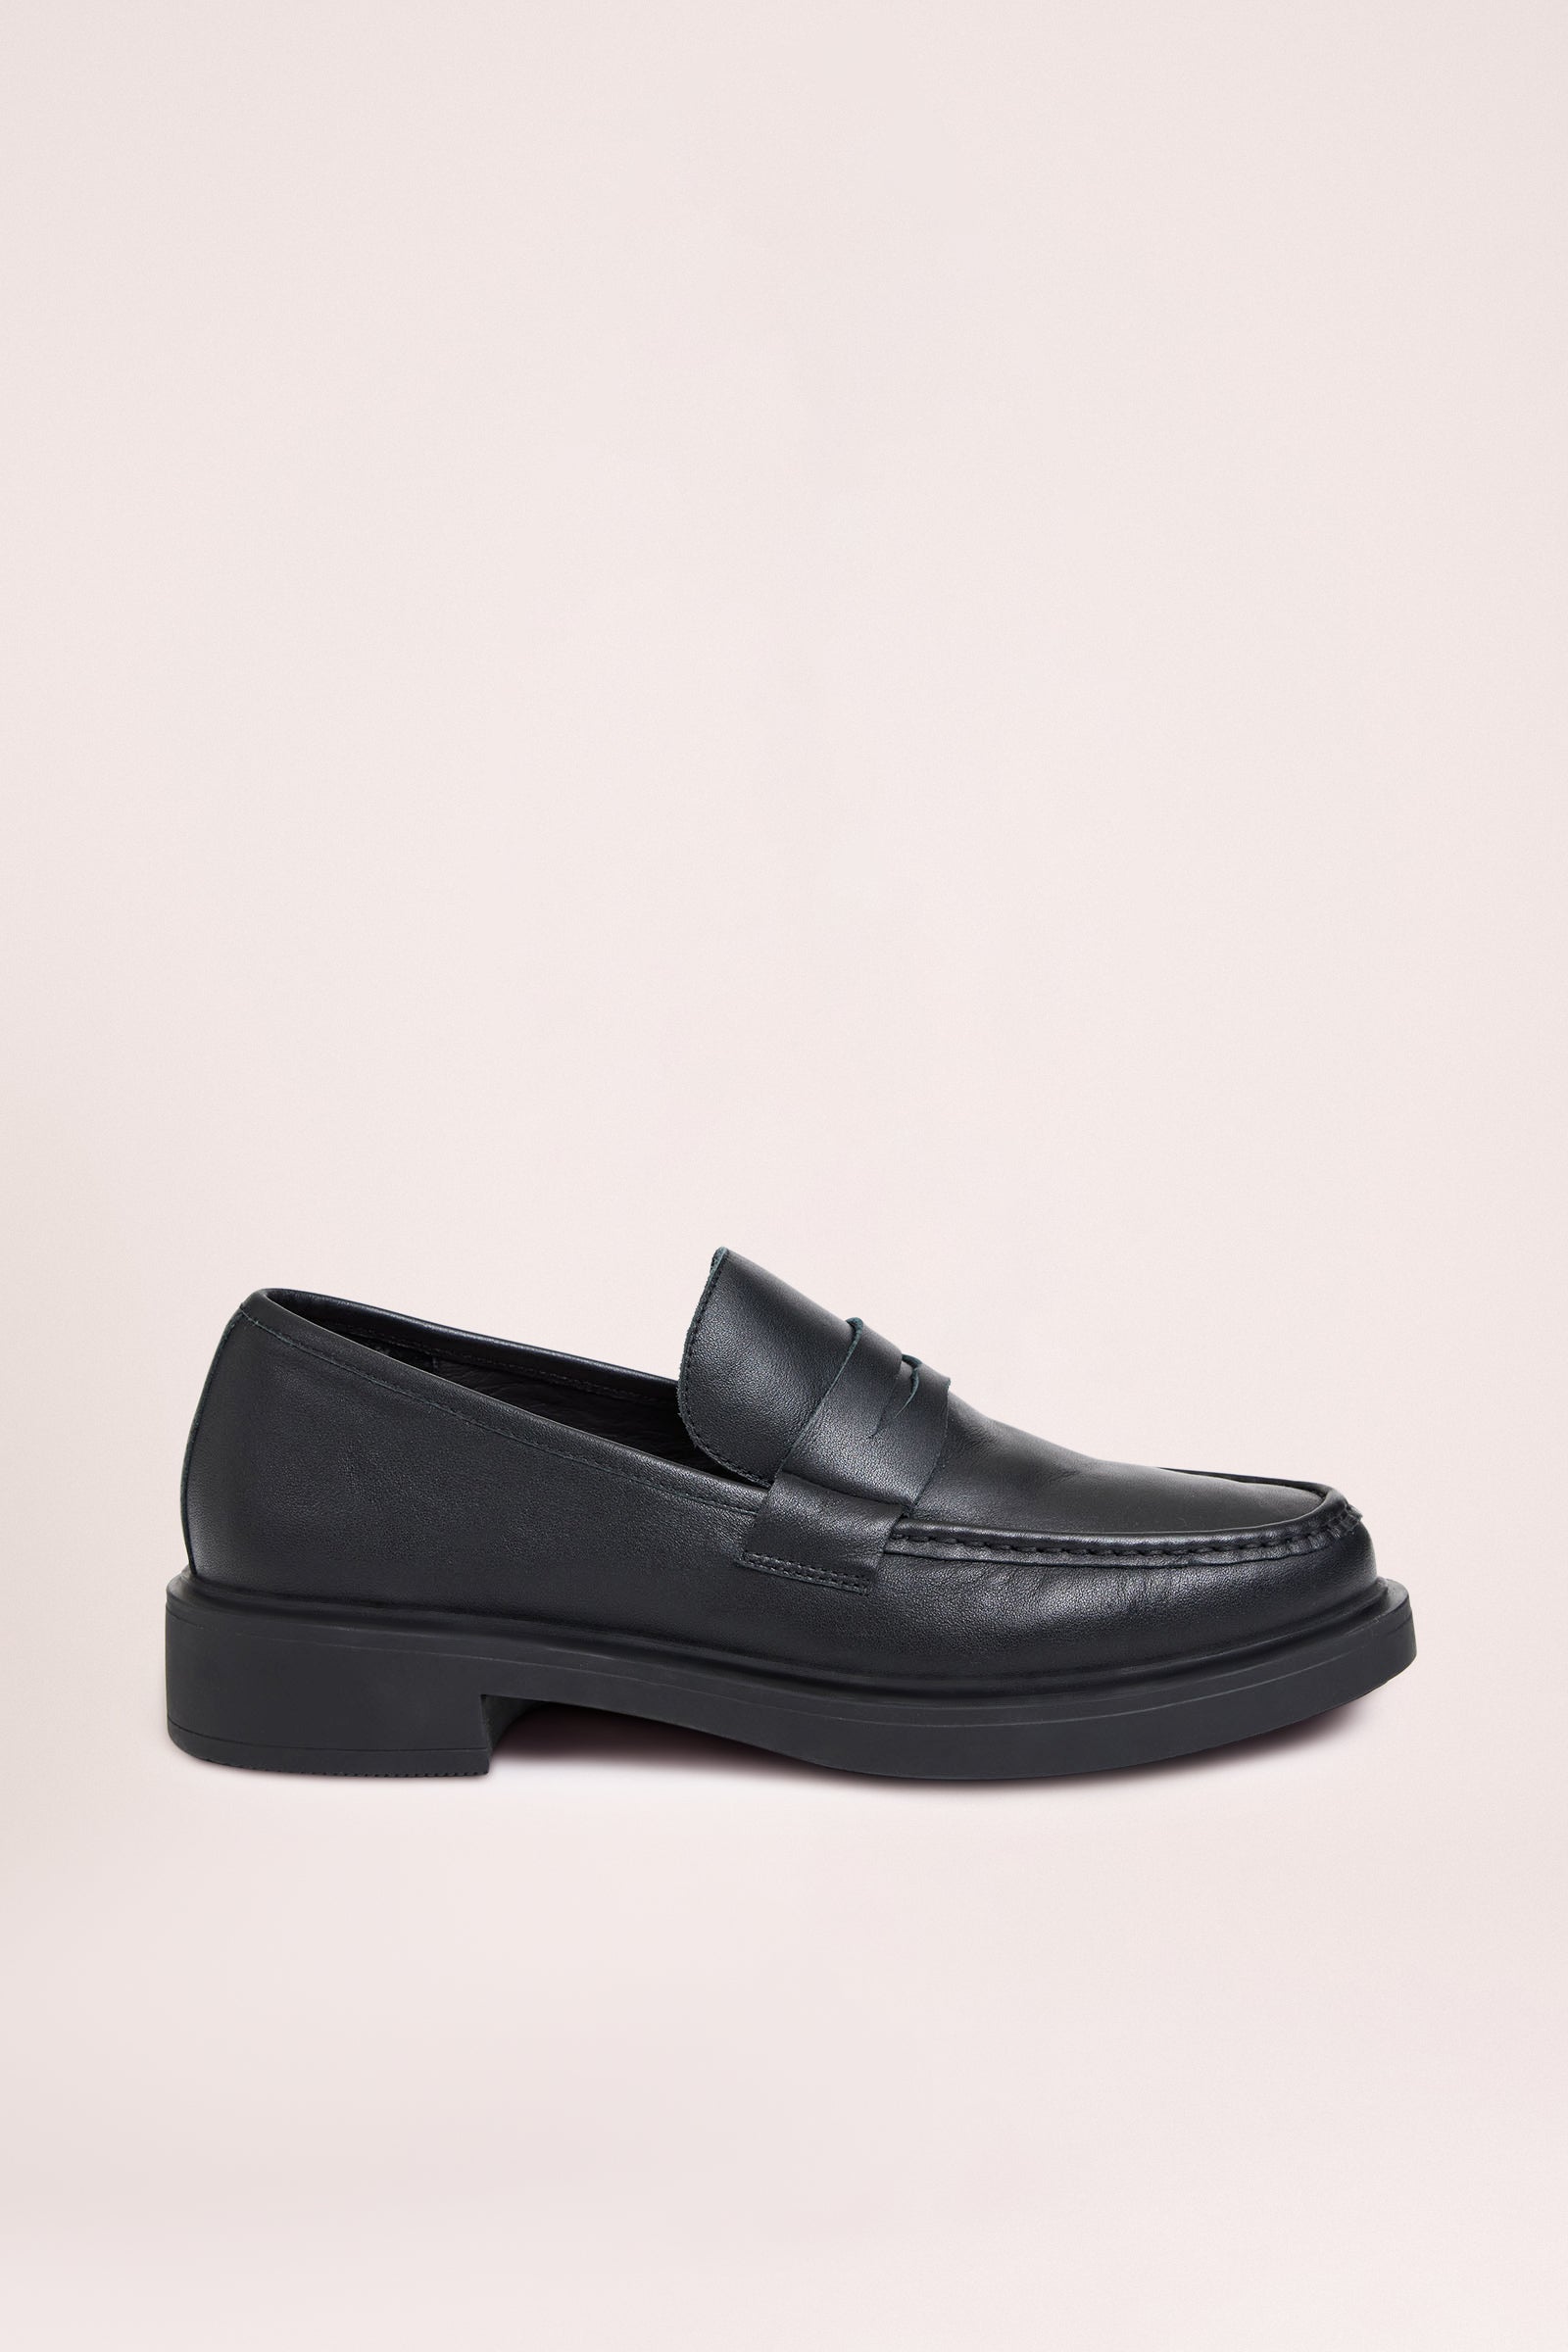 Allegra Leather Loafer Black 